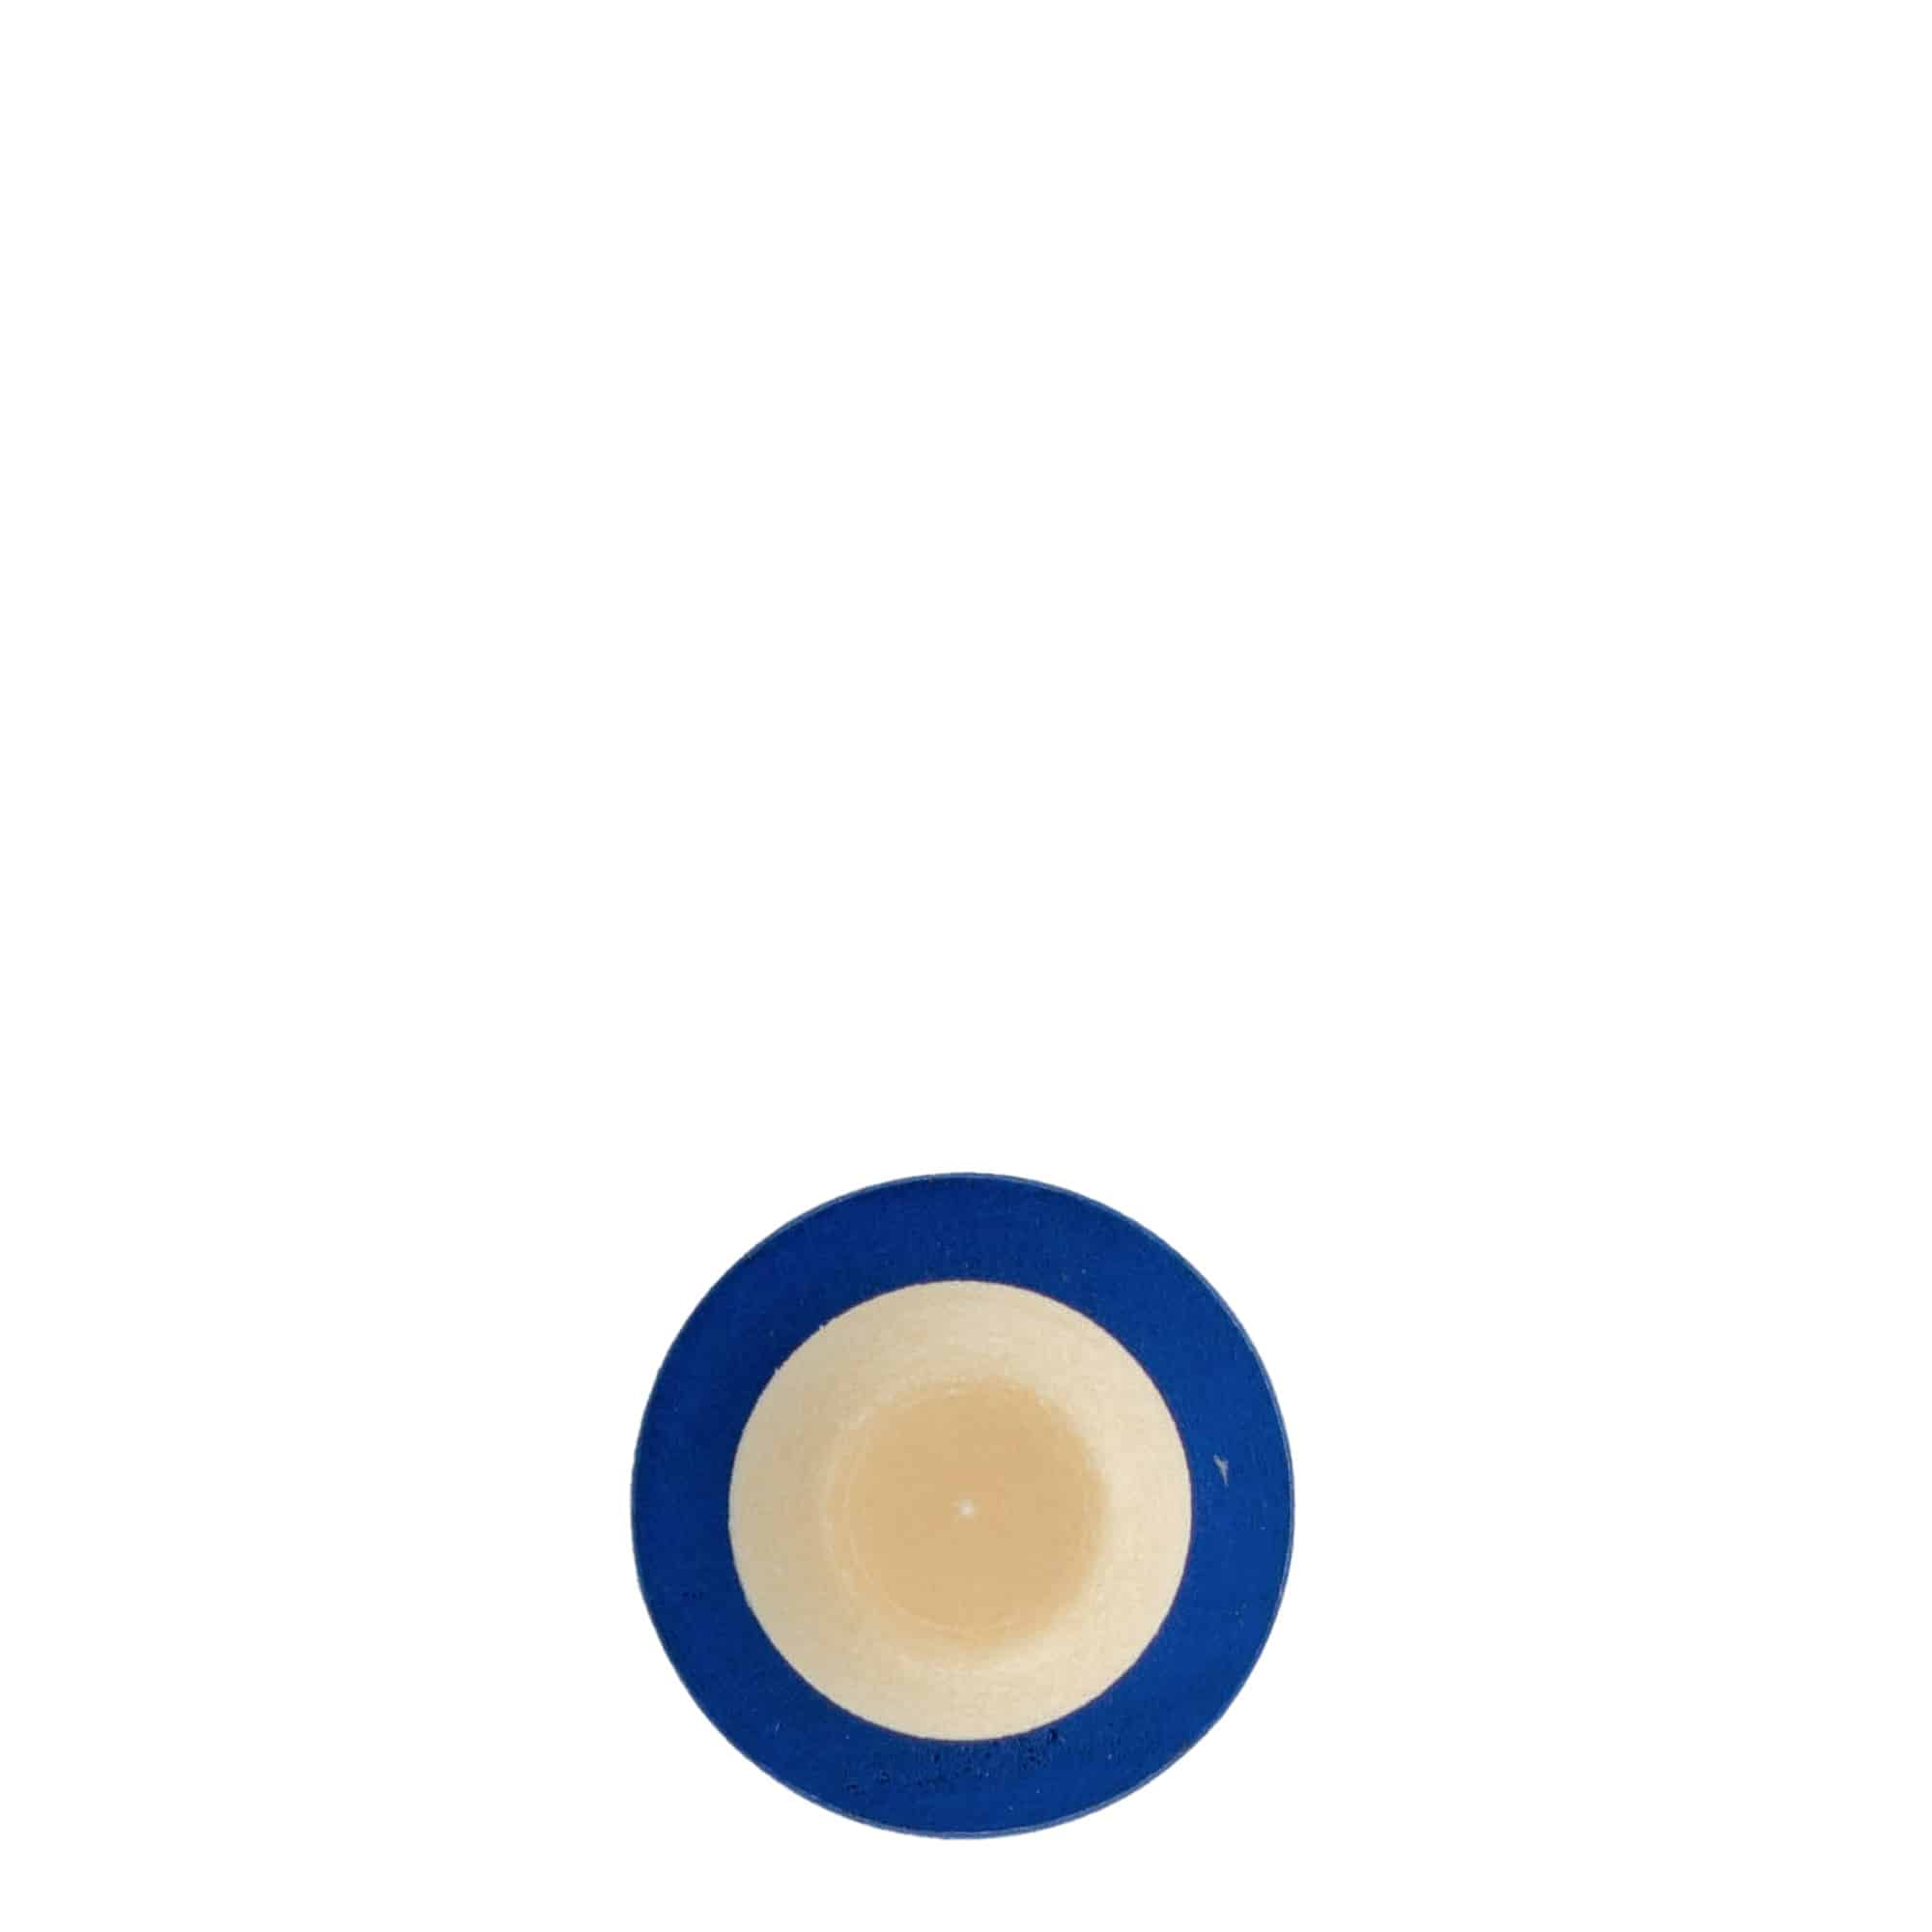 Korek s úchytem 19 mm, dřevo, modrý, pro uzávěr: korek